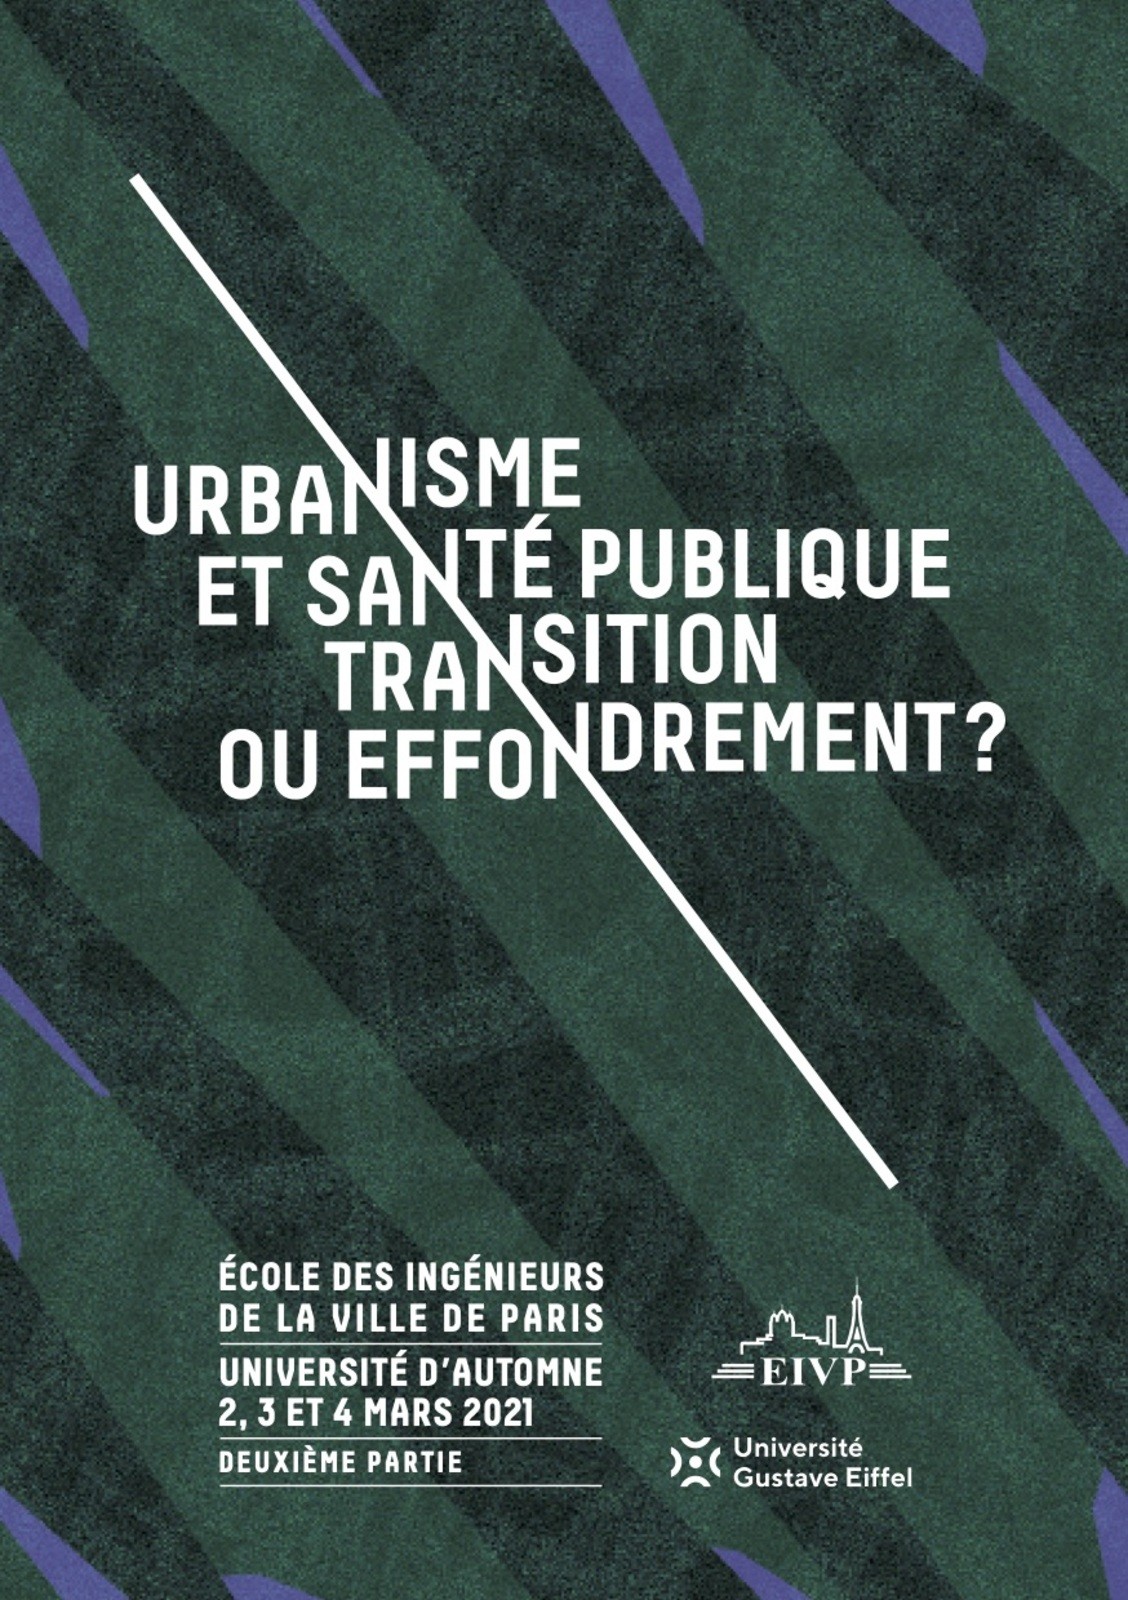 Webinaire "Urbanisme et santé publique : transition ou effondrement?"